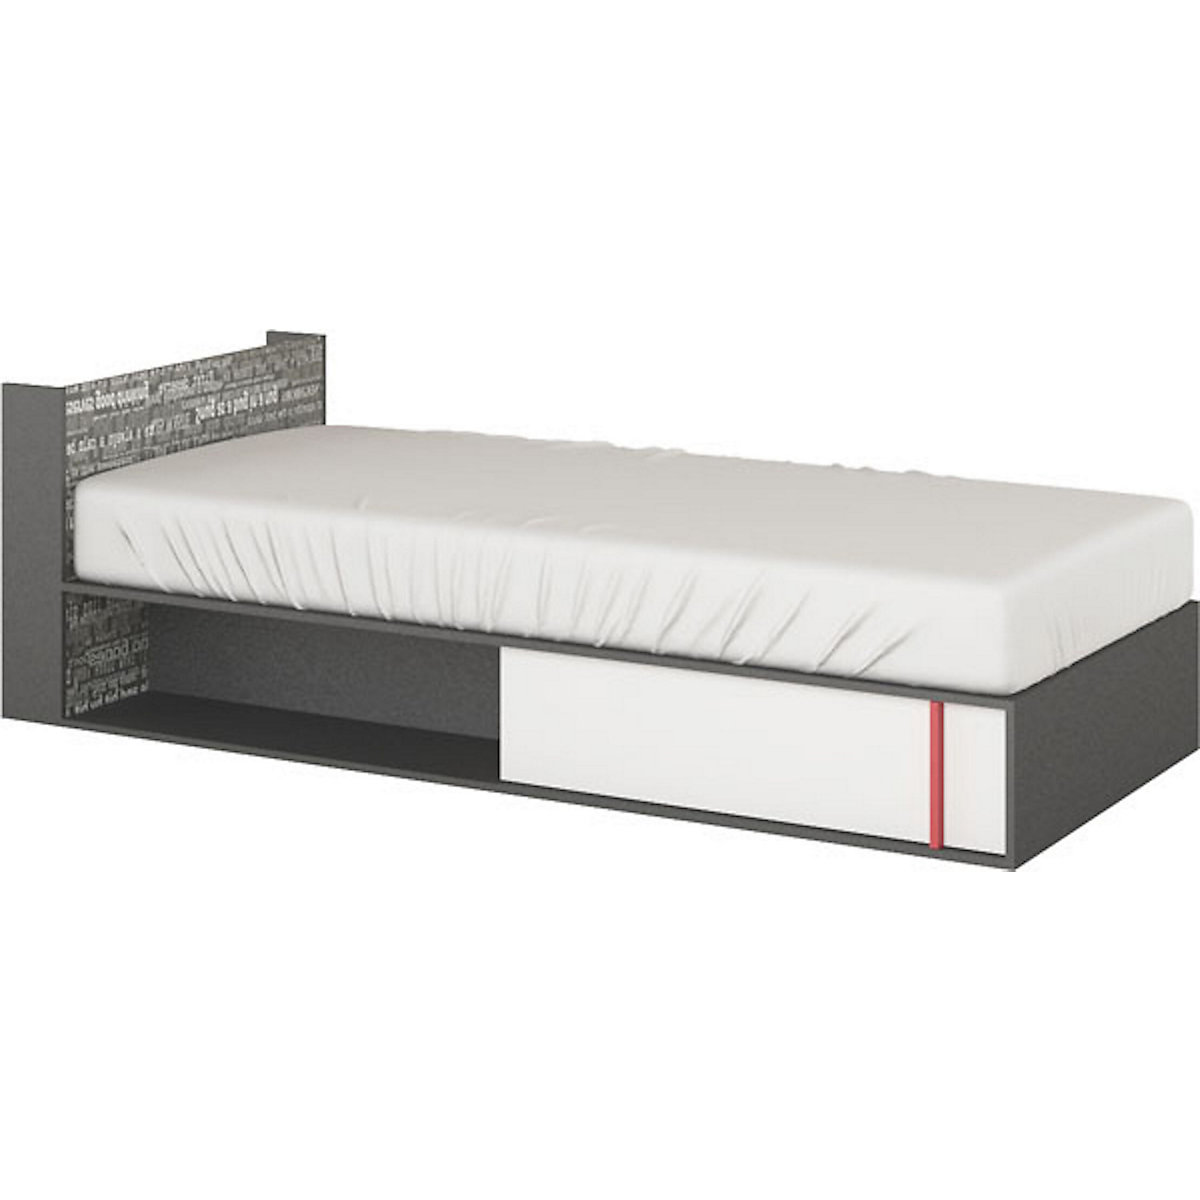 Feldmann-Wohnen Bett Philosophy Einzelbett 90x200cm mit Schrift Print